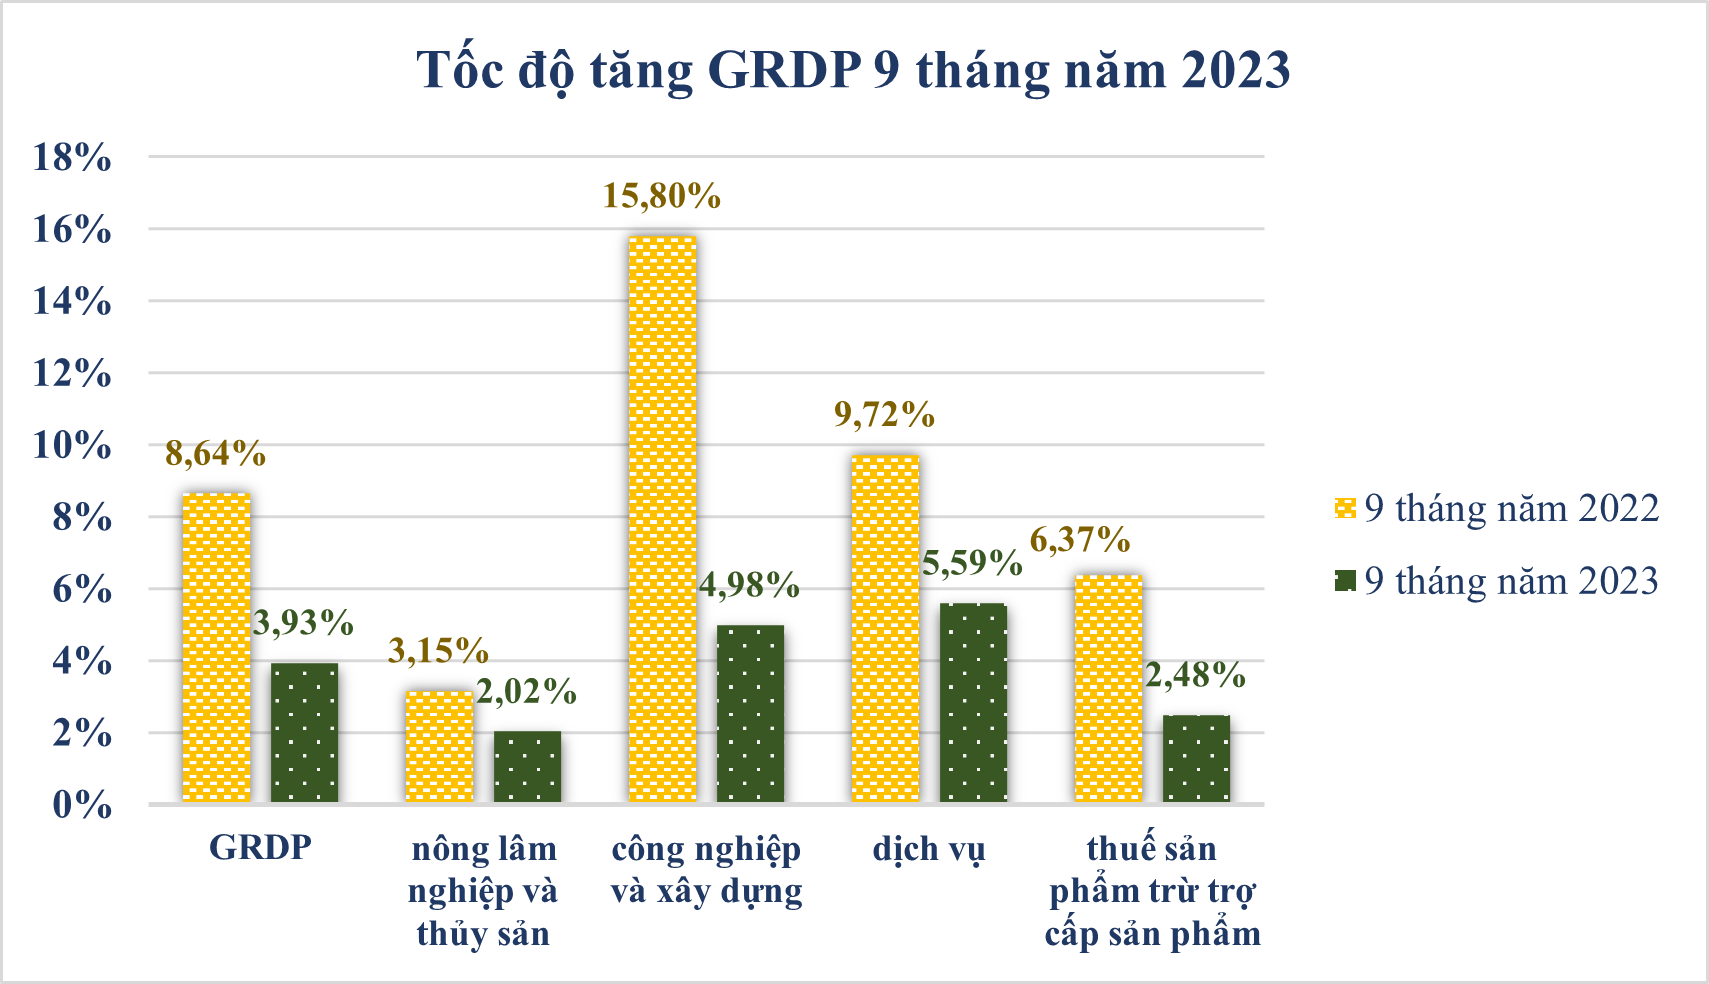 Tổng sản phẩm trên địa bàn 9 tháng đầu năm 2023 Tiền Giang đạt 3,93%